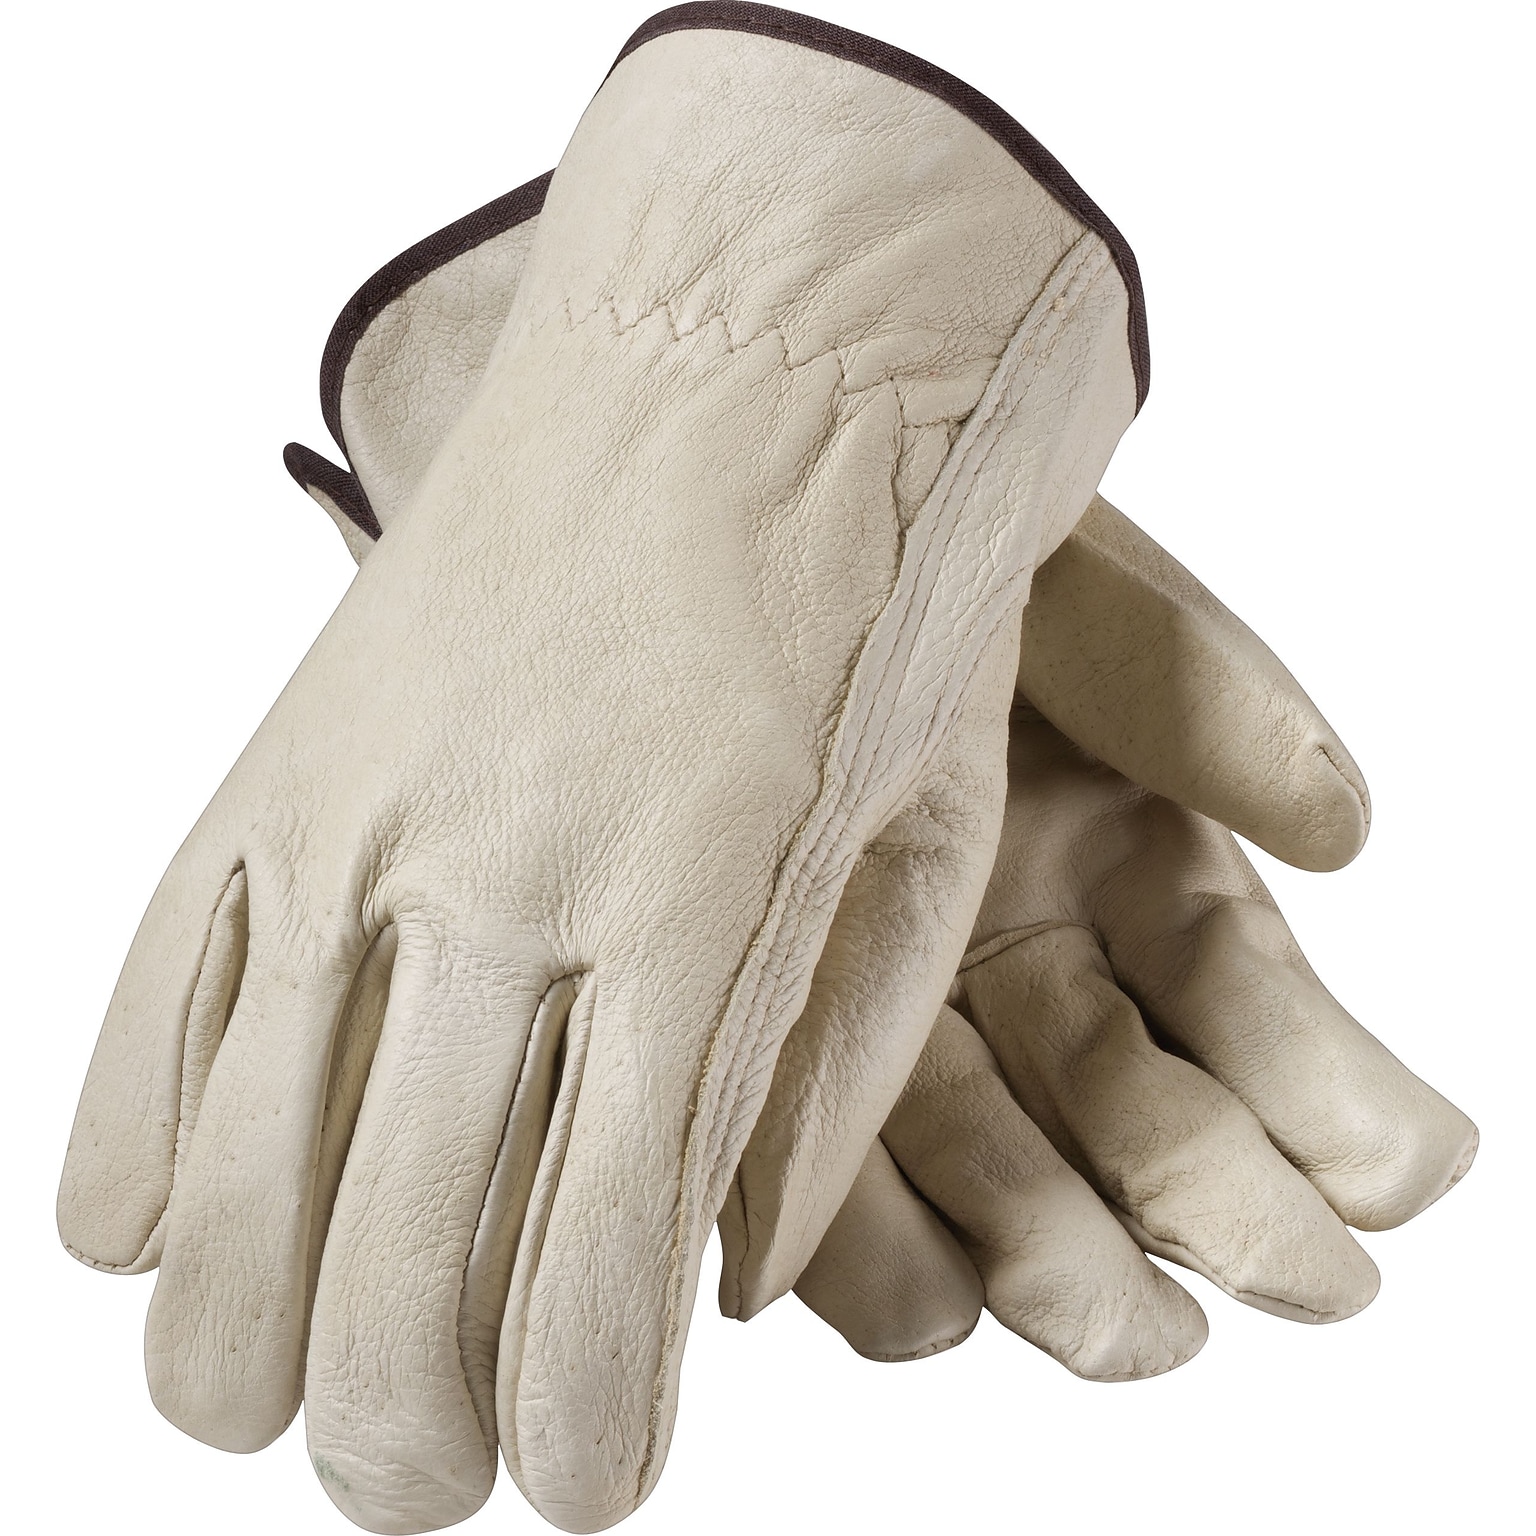 PIP Drivers Gloves, Top Grain Pigskin, XL, Cream (70-361/XL)